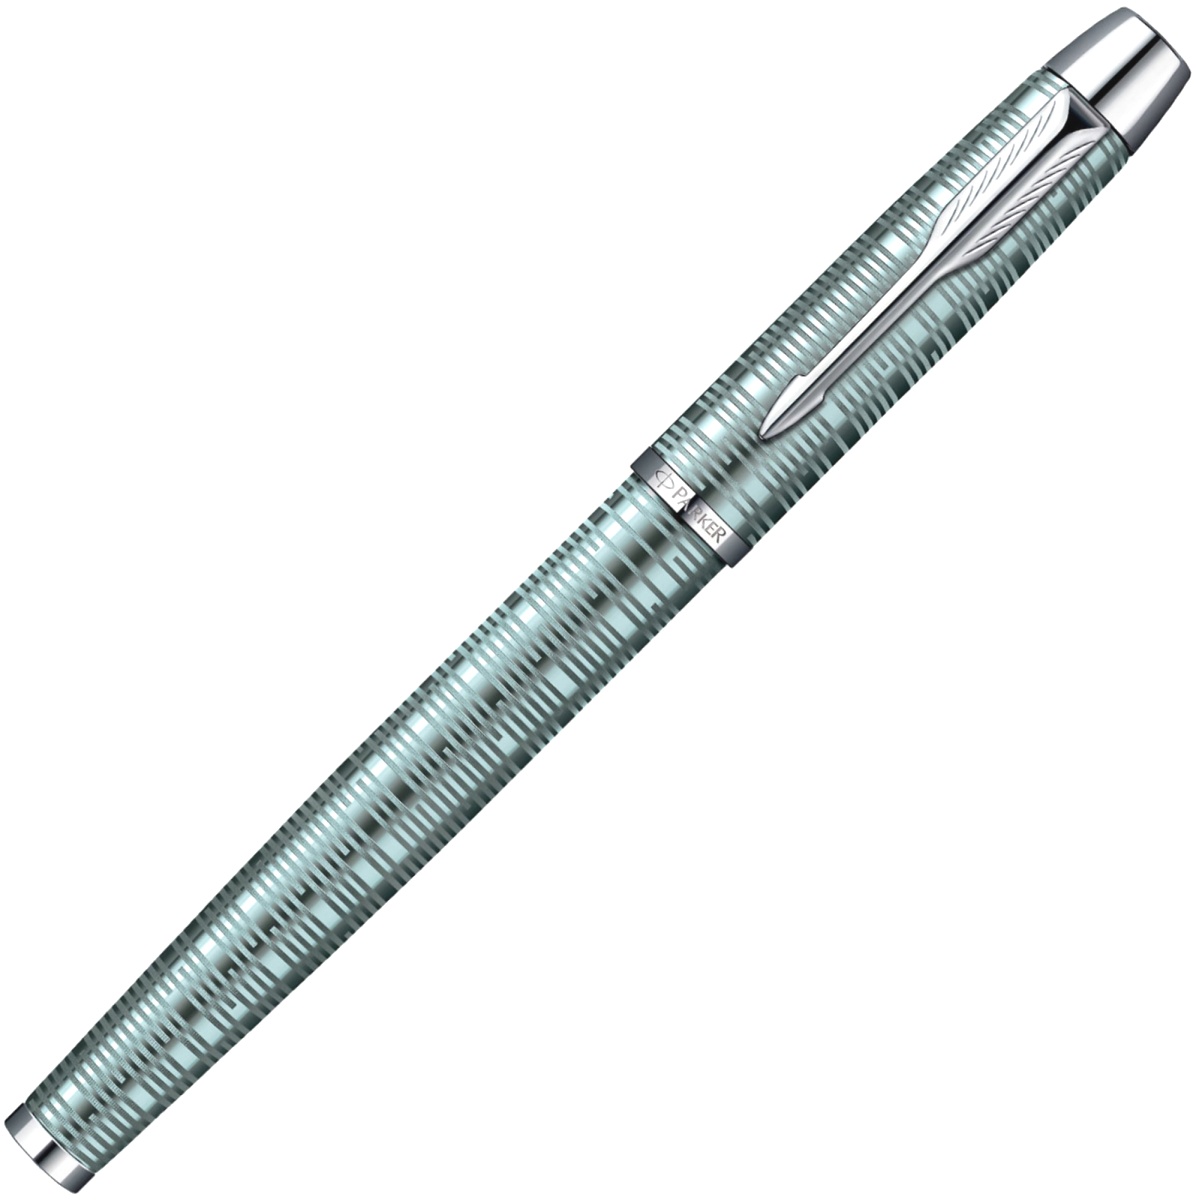 Перьевая ручка Parker I.M. Premium Vacumatic F224, Emerald Pearl CT (перо F), фото 2